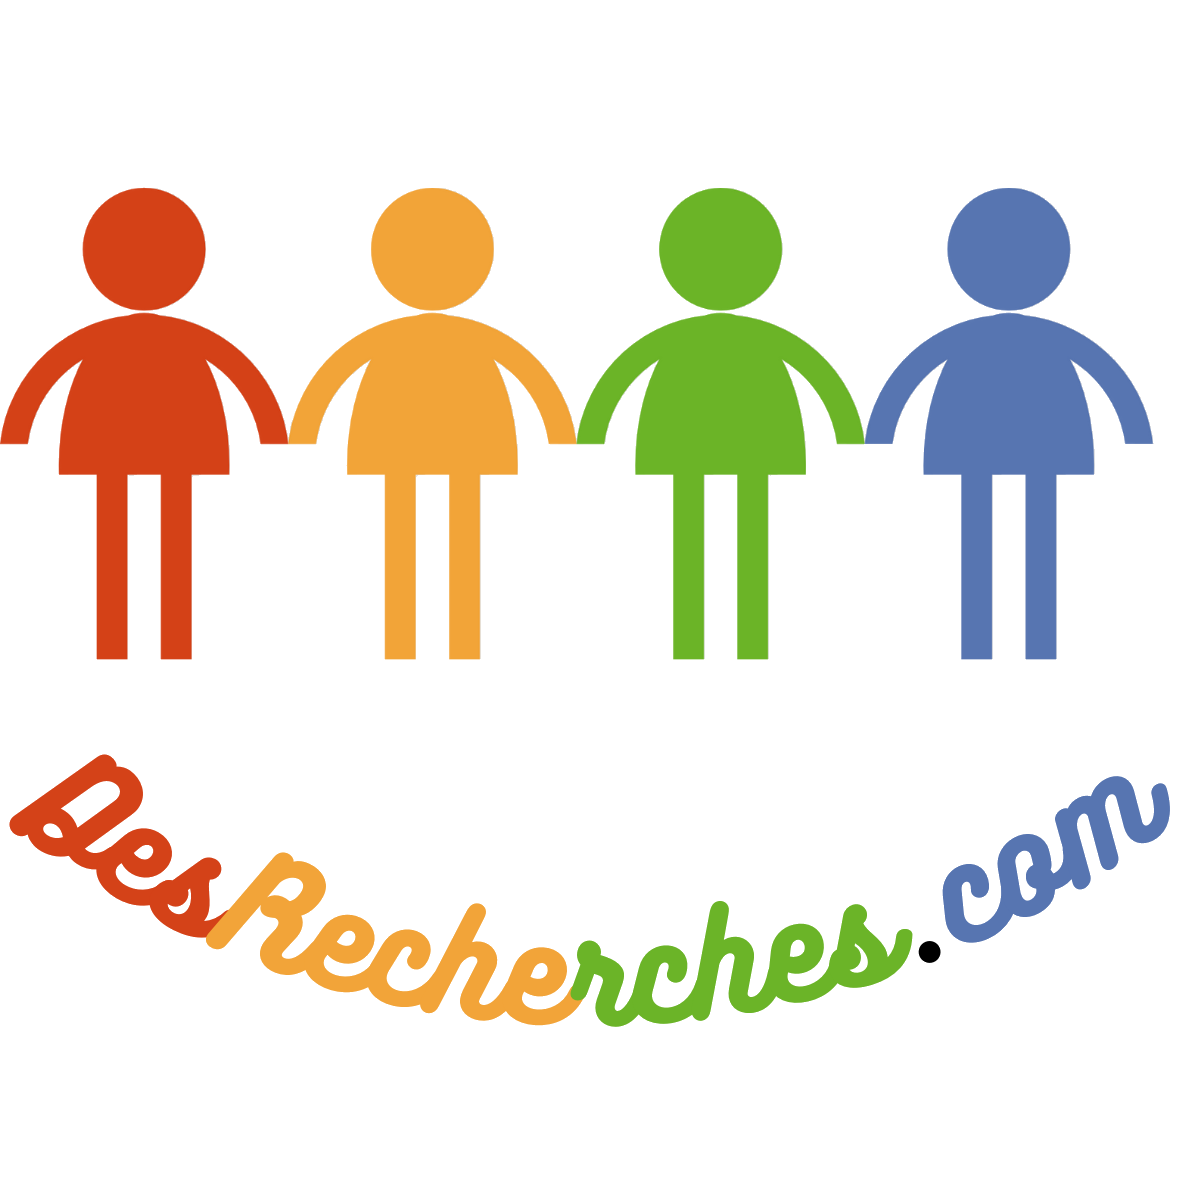 Logo de desrecherches.com